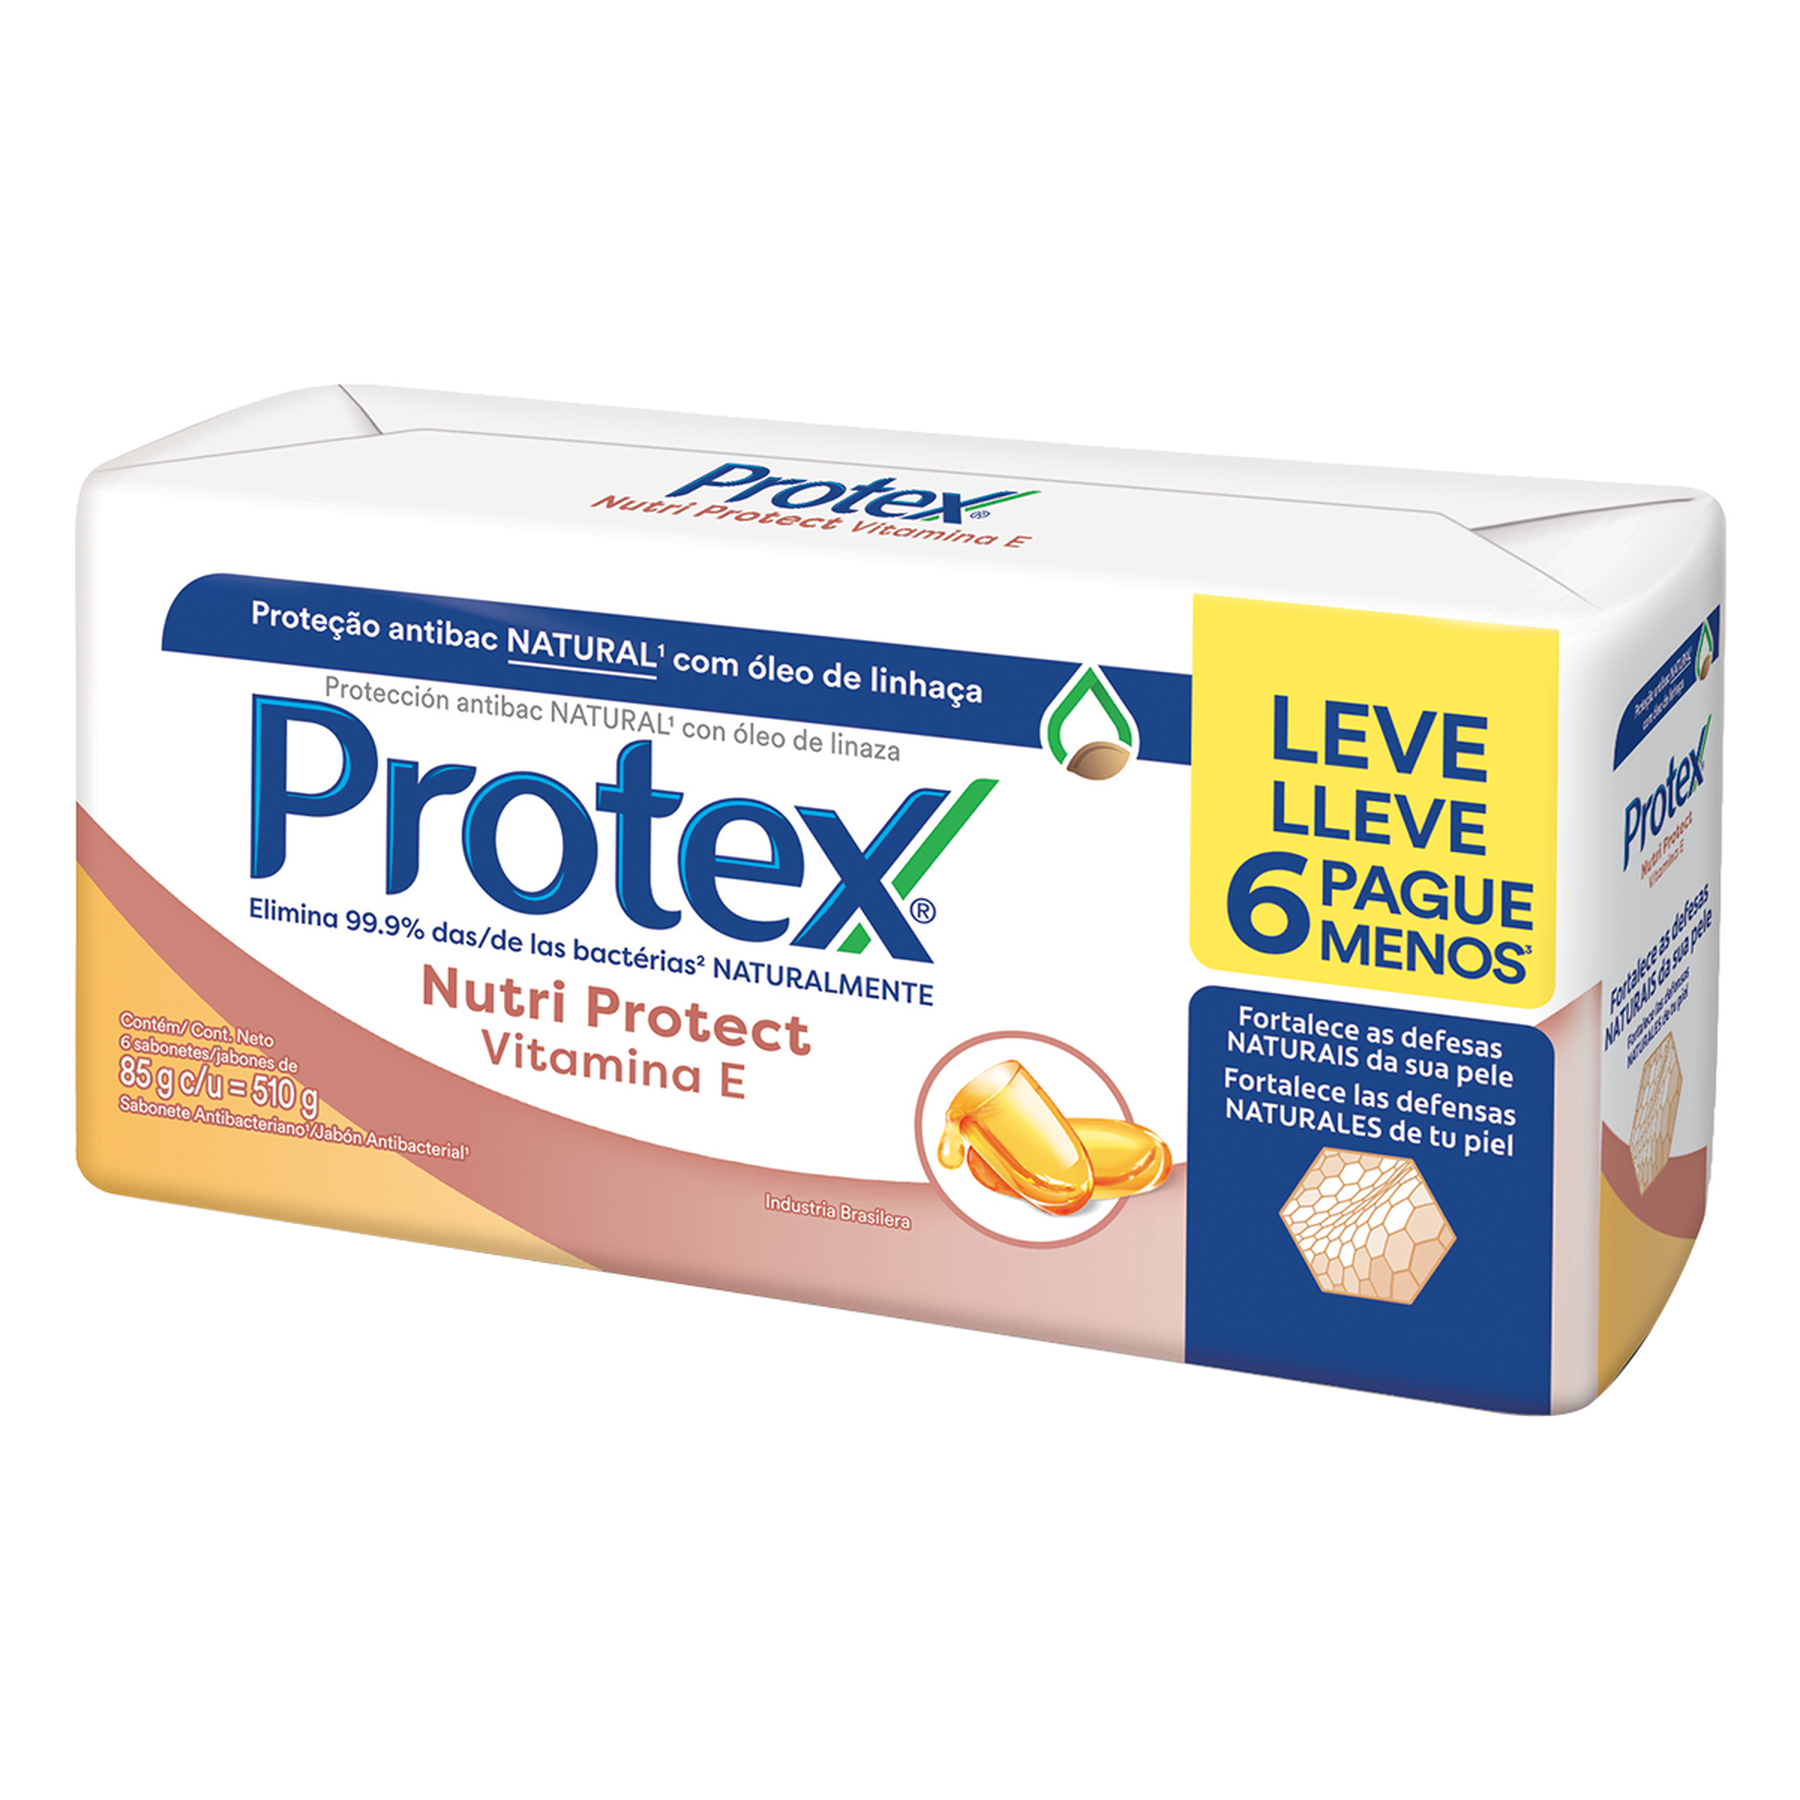 Sabonete em Barra Antibacteriano Nutri Protect Vitamina E Protex 6x85g - Embalagem Leve 6 Pague Menos